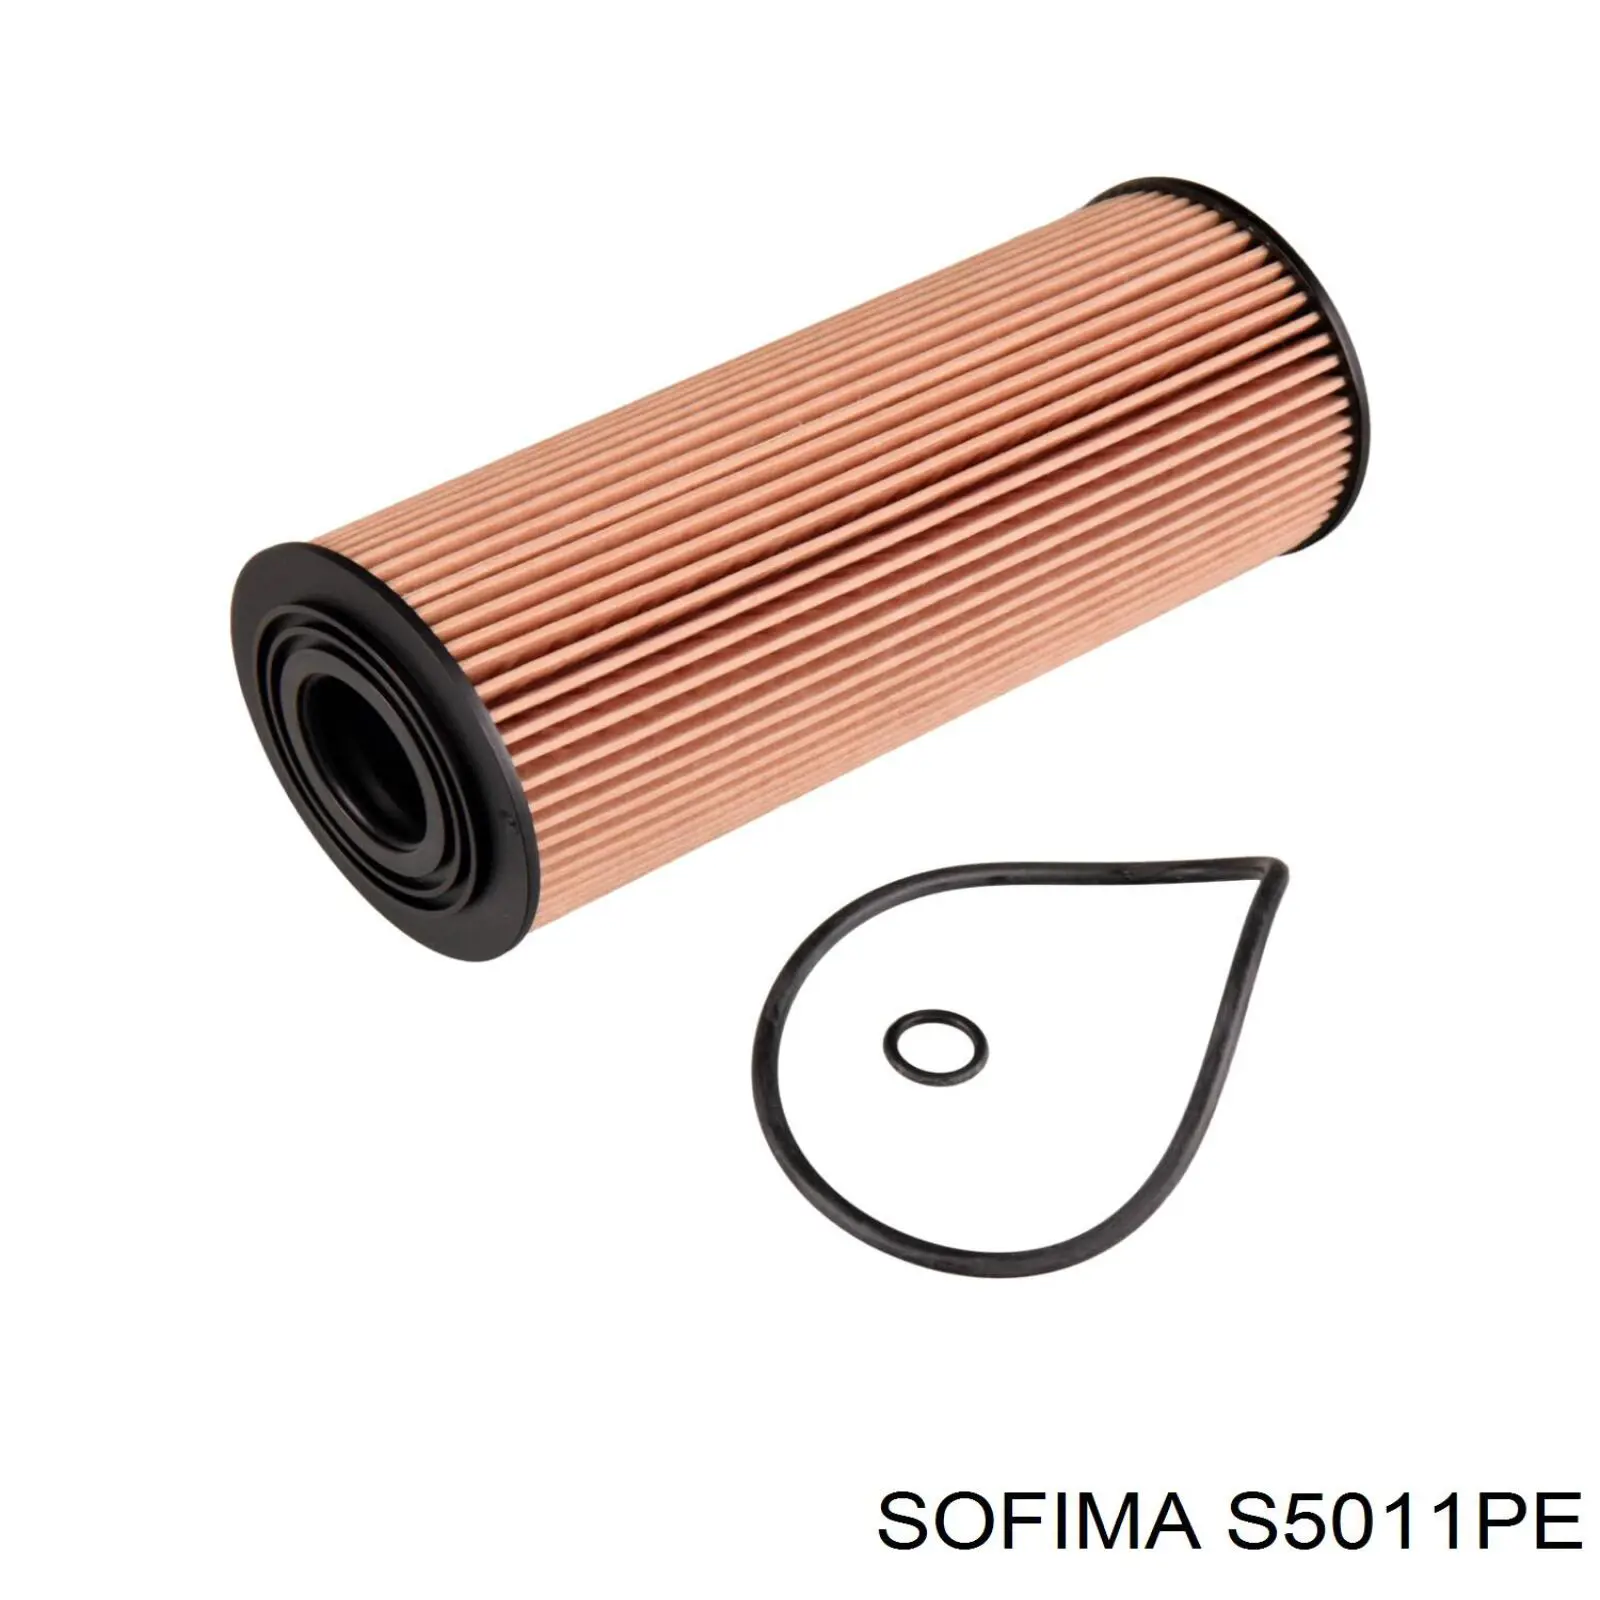 S 5011 PE Sofima filtro de aceite